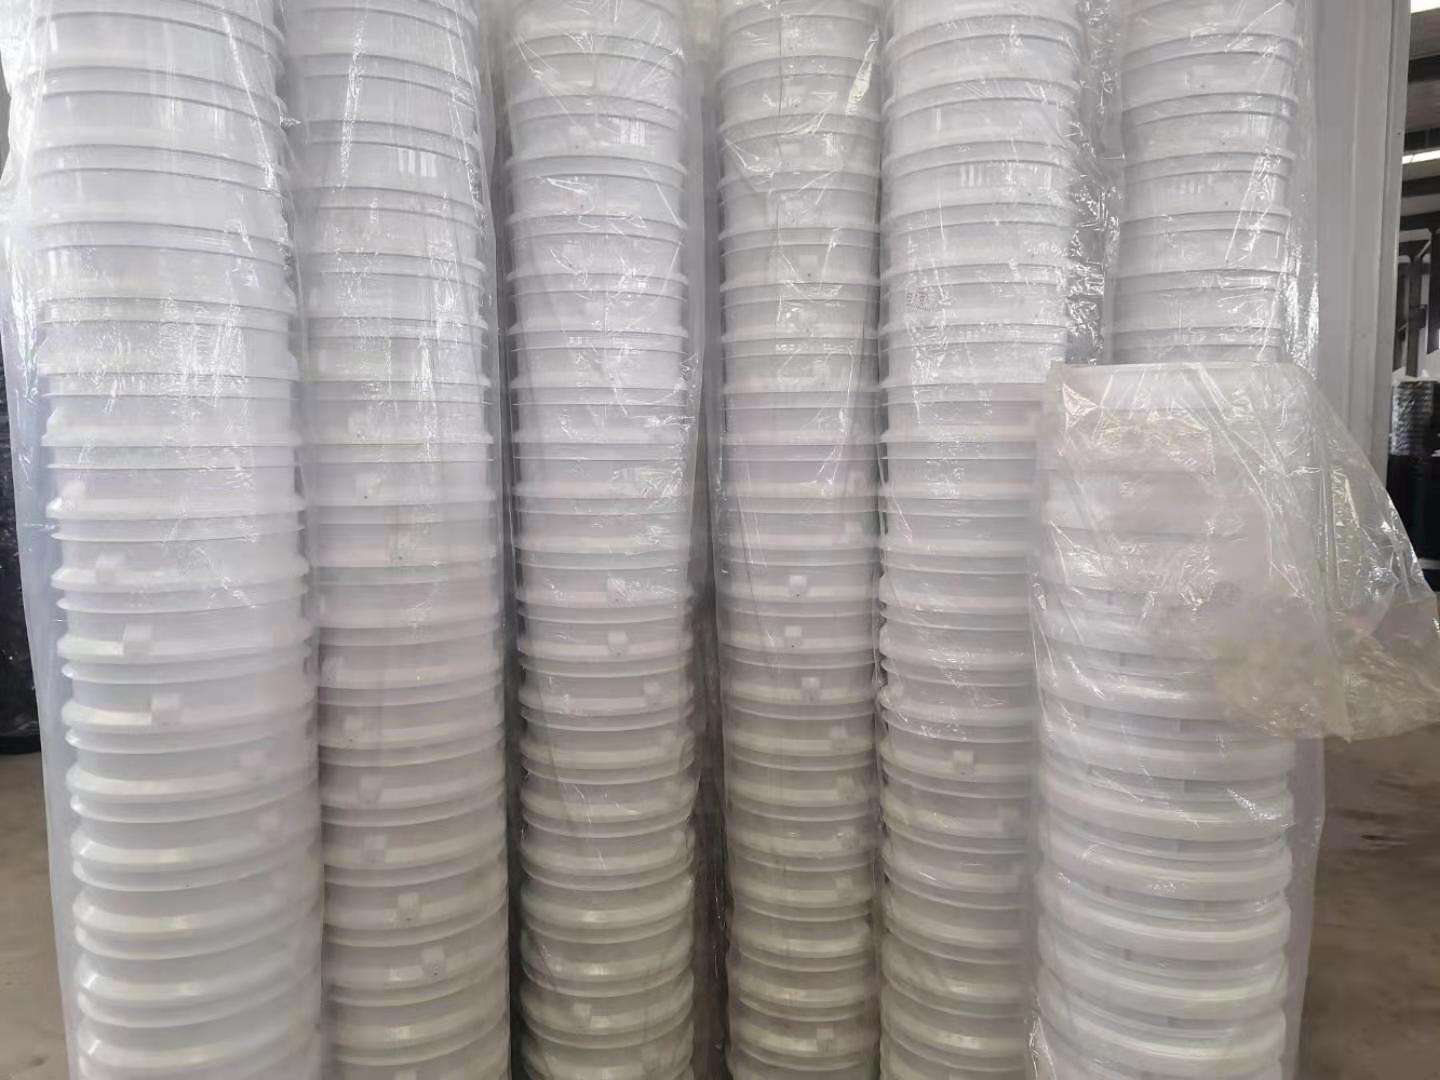 菏泽市5L-35L塑料涂料桶化工桶厂家菏泽念学塑业专业生产5L-35L塑料涂料桶化工桶